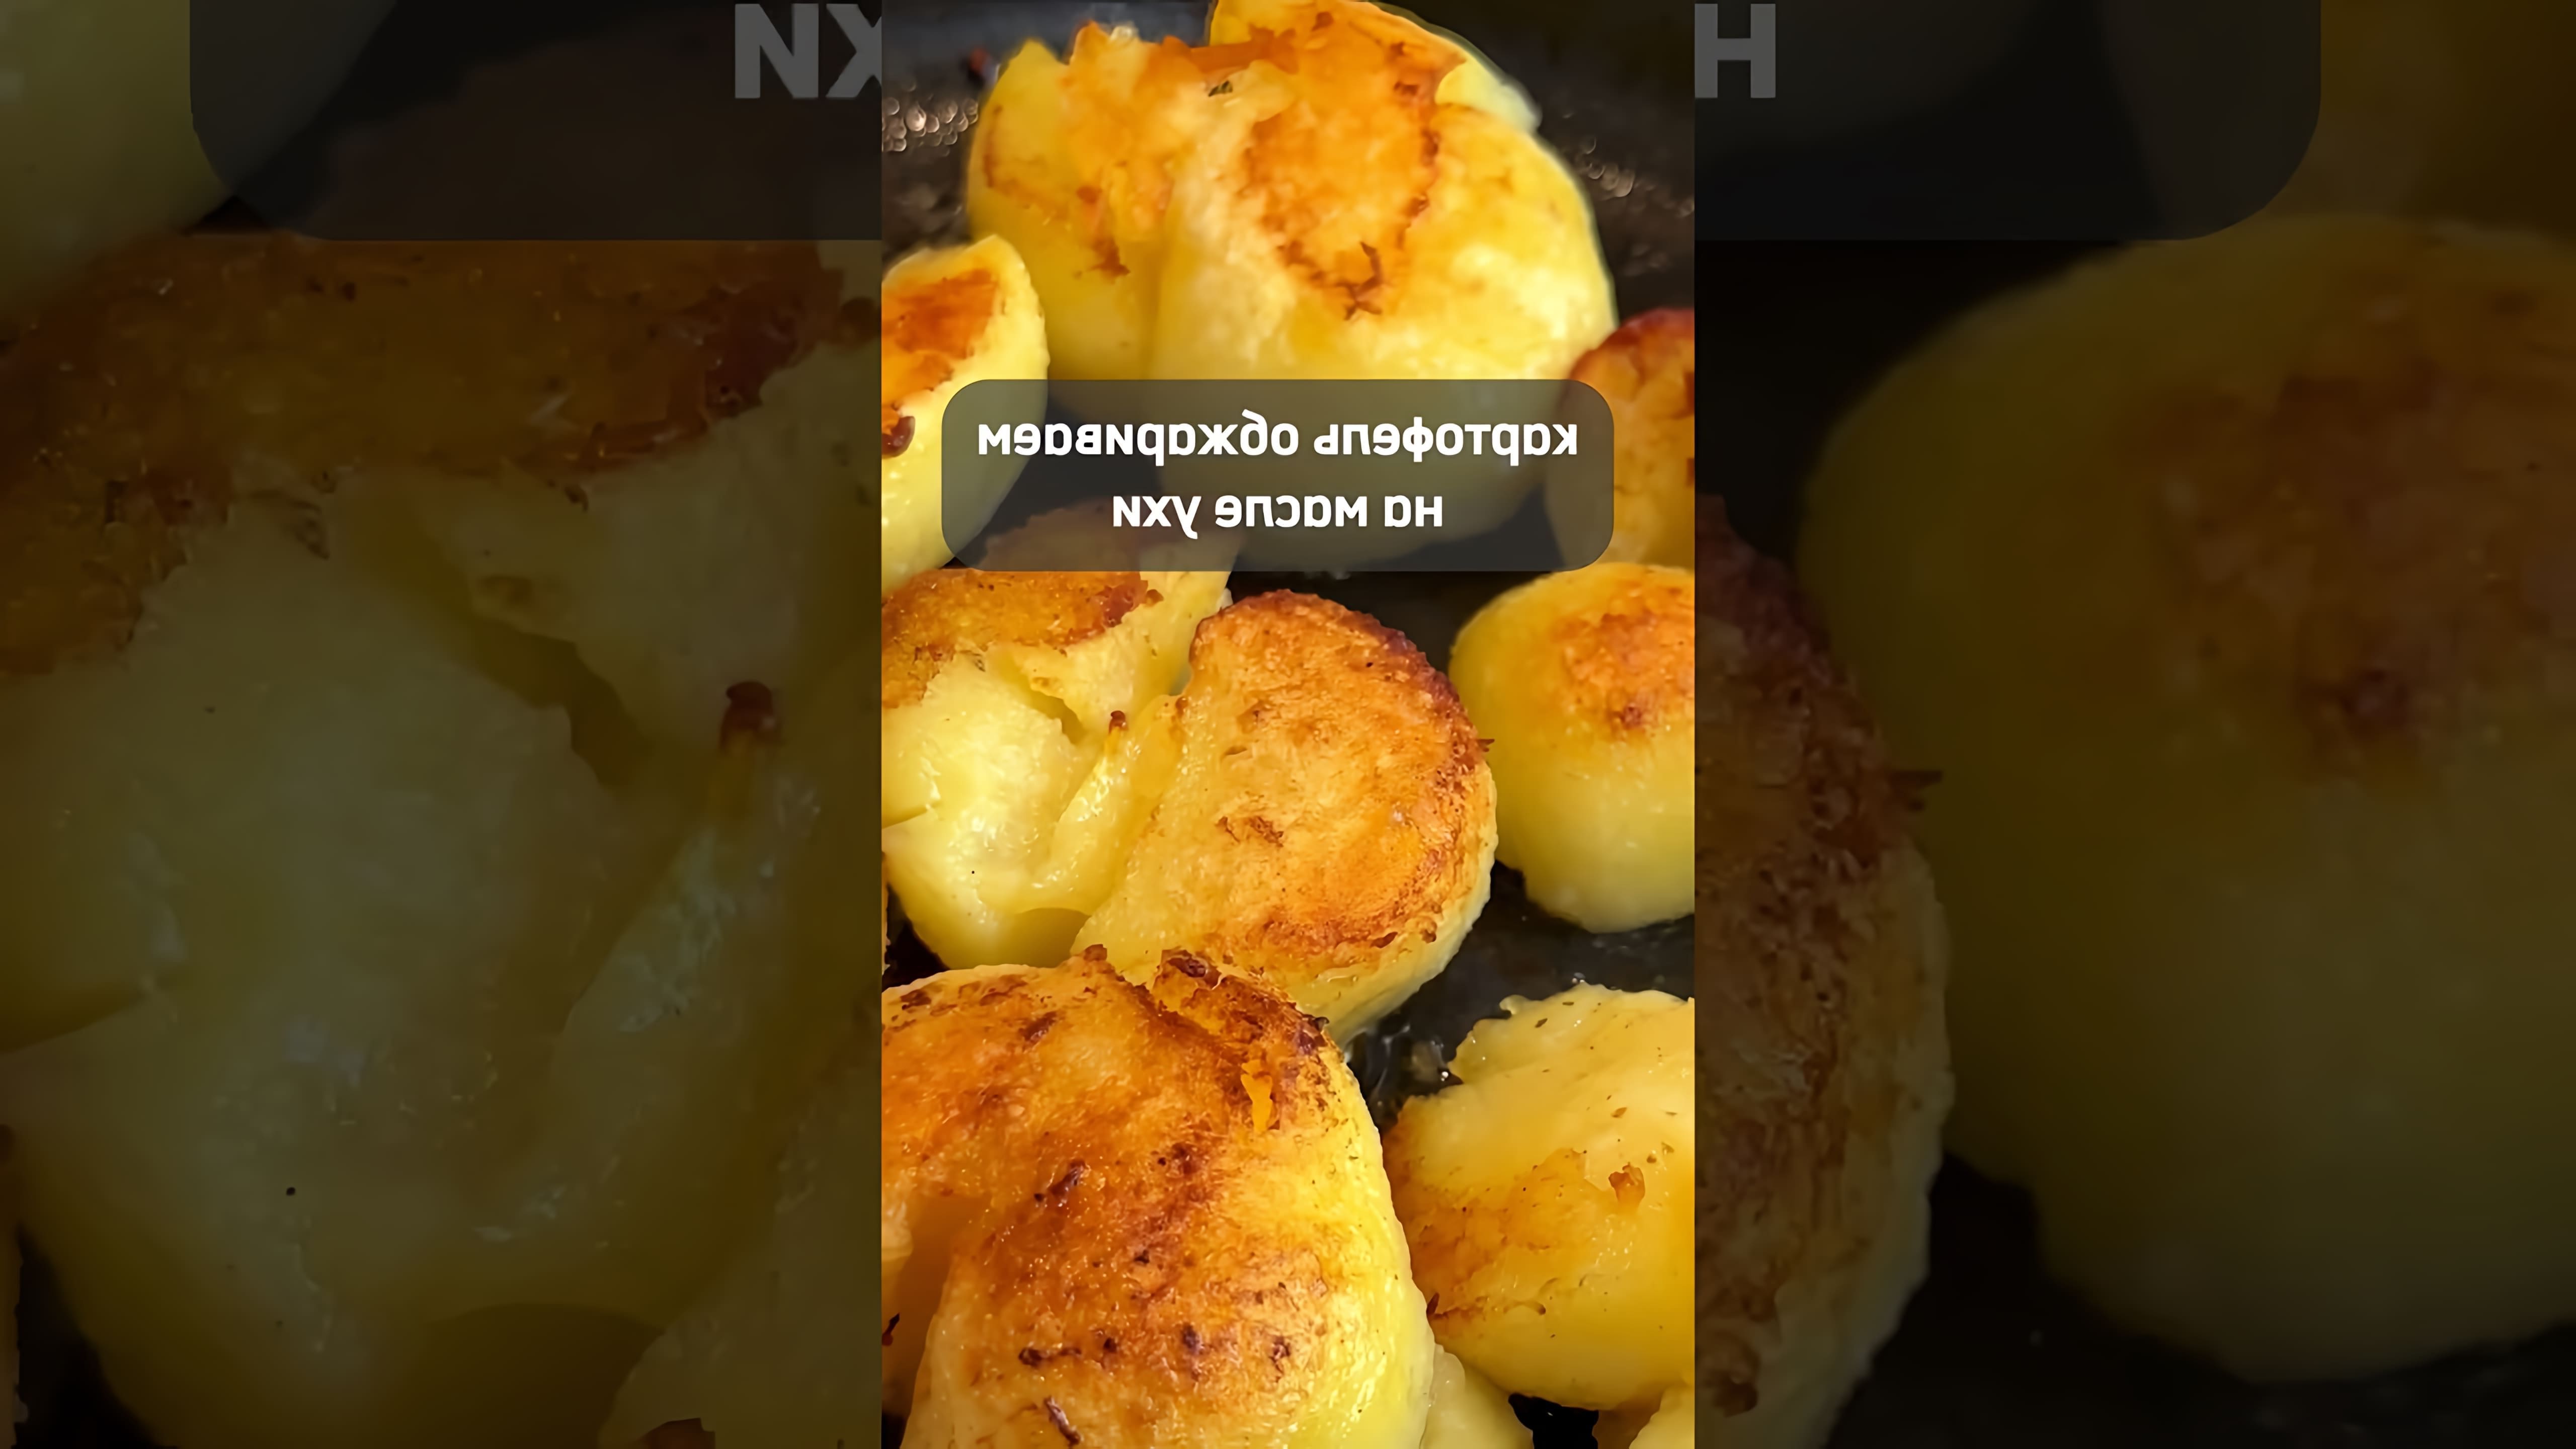 В данном видео демонстрируется процесс приготовления холодника - литовского холодного супа